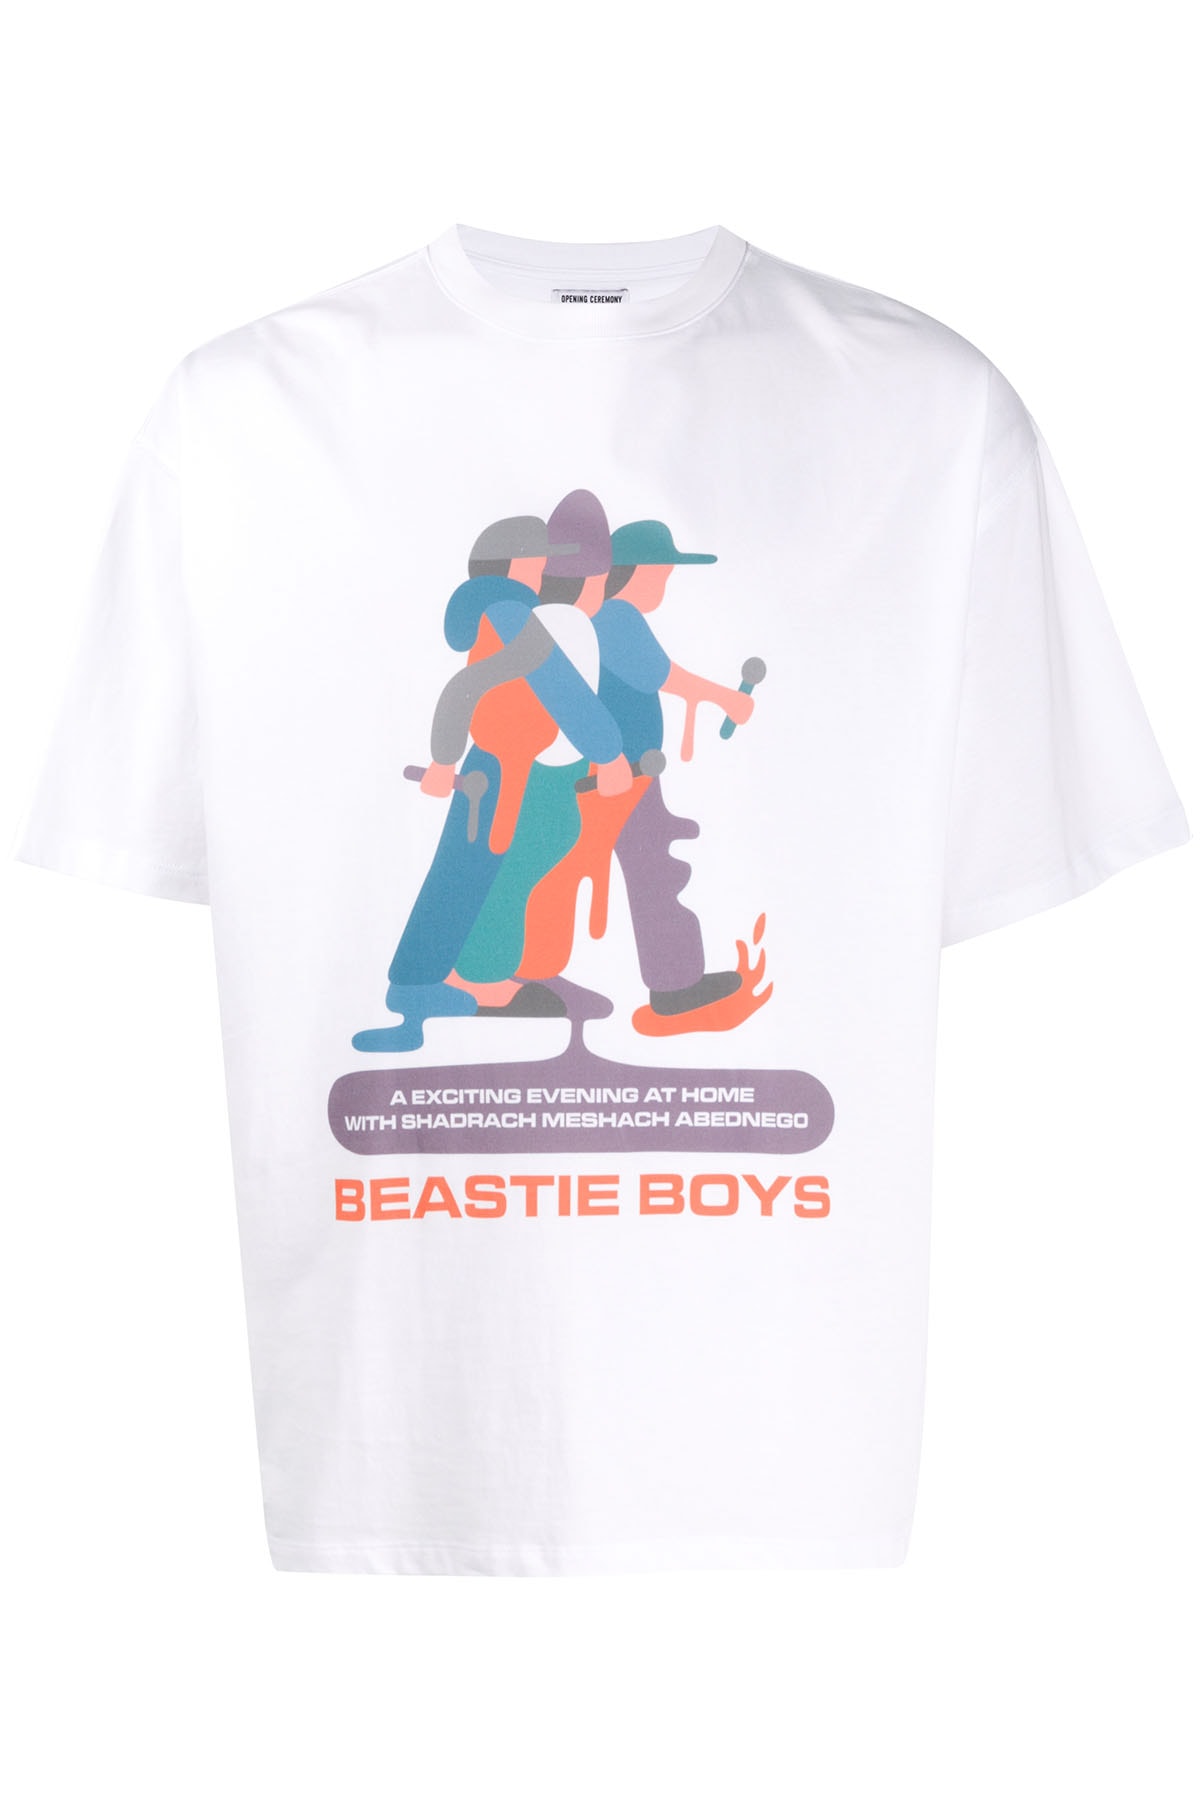 ビースティ・ボーイズ オープニングセレモニー ファーフェッチ Beastie Boys × OPENING CEREMONY による Farfetch 限定カプセルコレクションがリリース